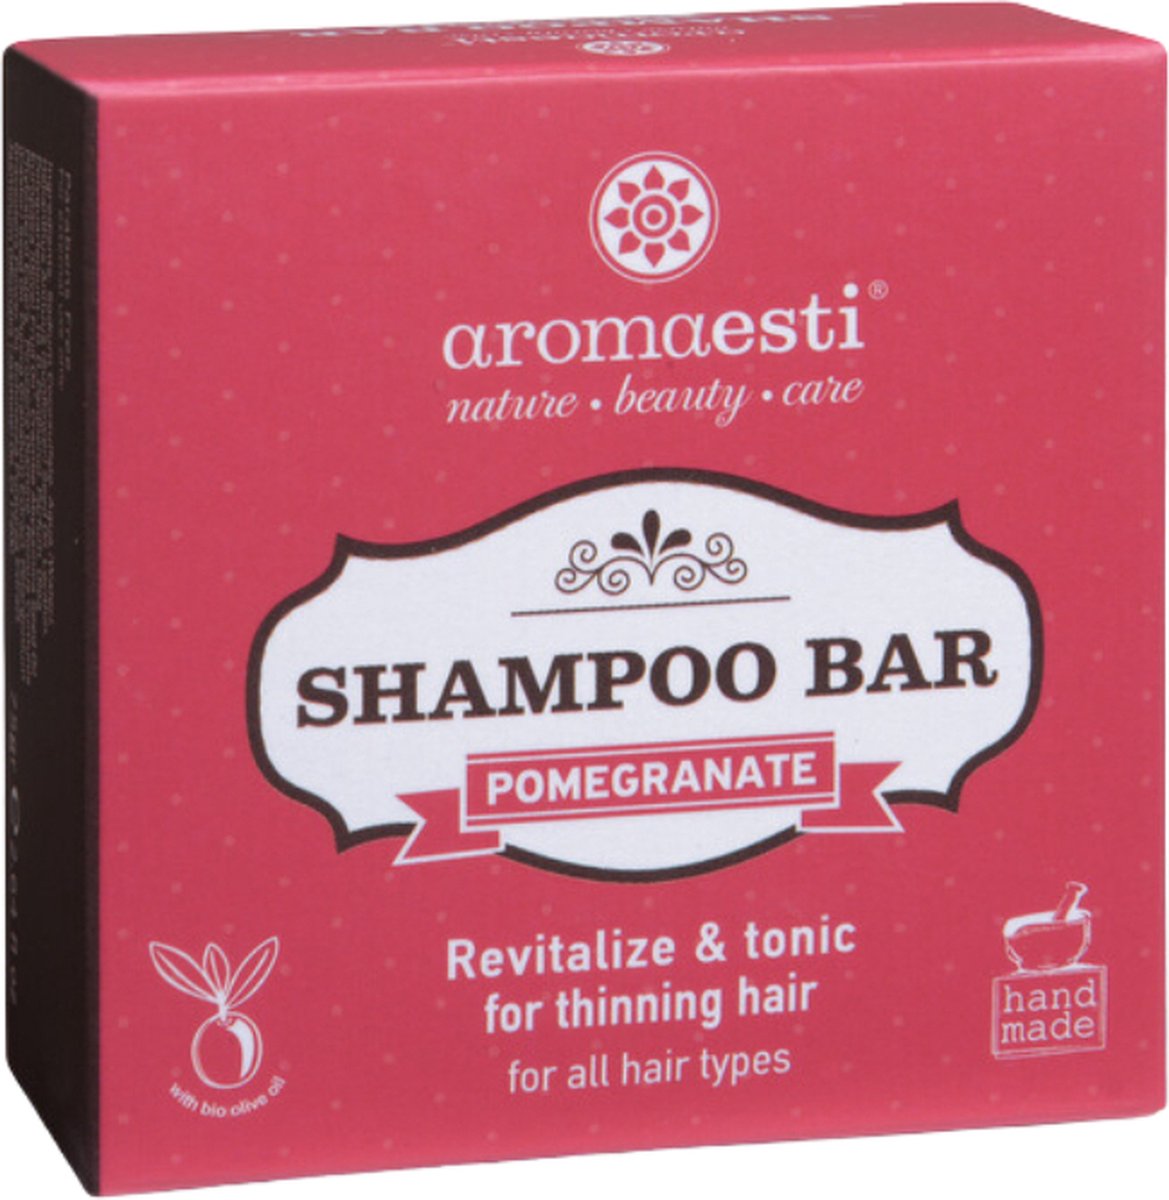 Aromaesti Solid Shampoo Bar Pomegranate - Granaatappel - shampoo voor dunner wordend haar - zero waste - solid shampoo - vegan - duurzaam - biologisch - diervriendelijk - 60 gram